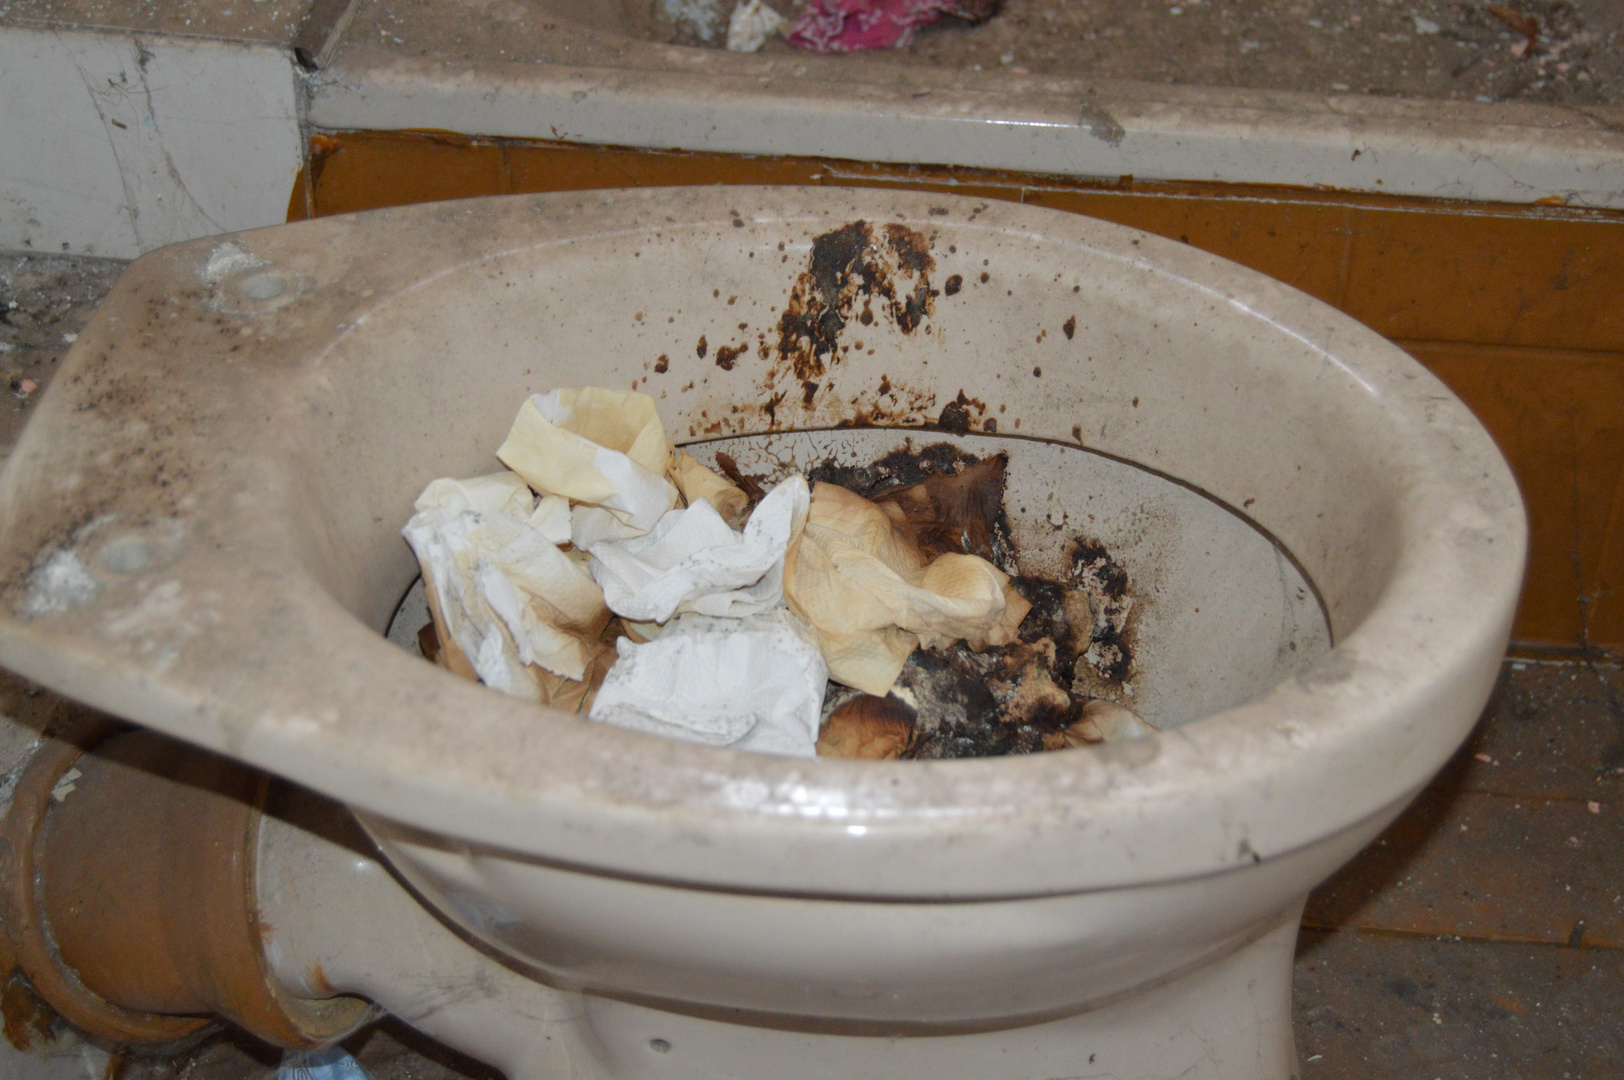 Verdreckte Toilette in einem verfallenen Wohnhaus